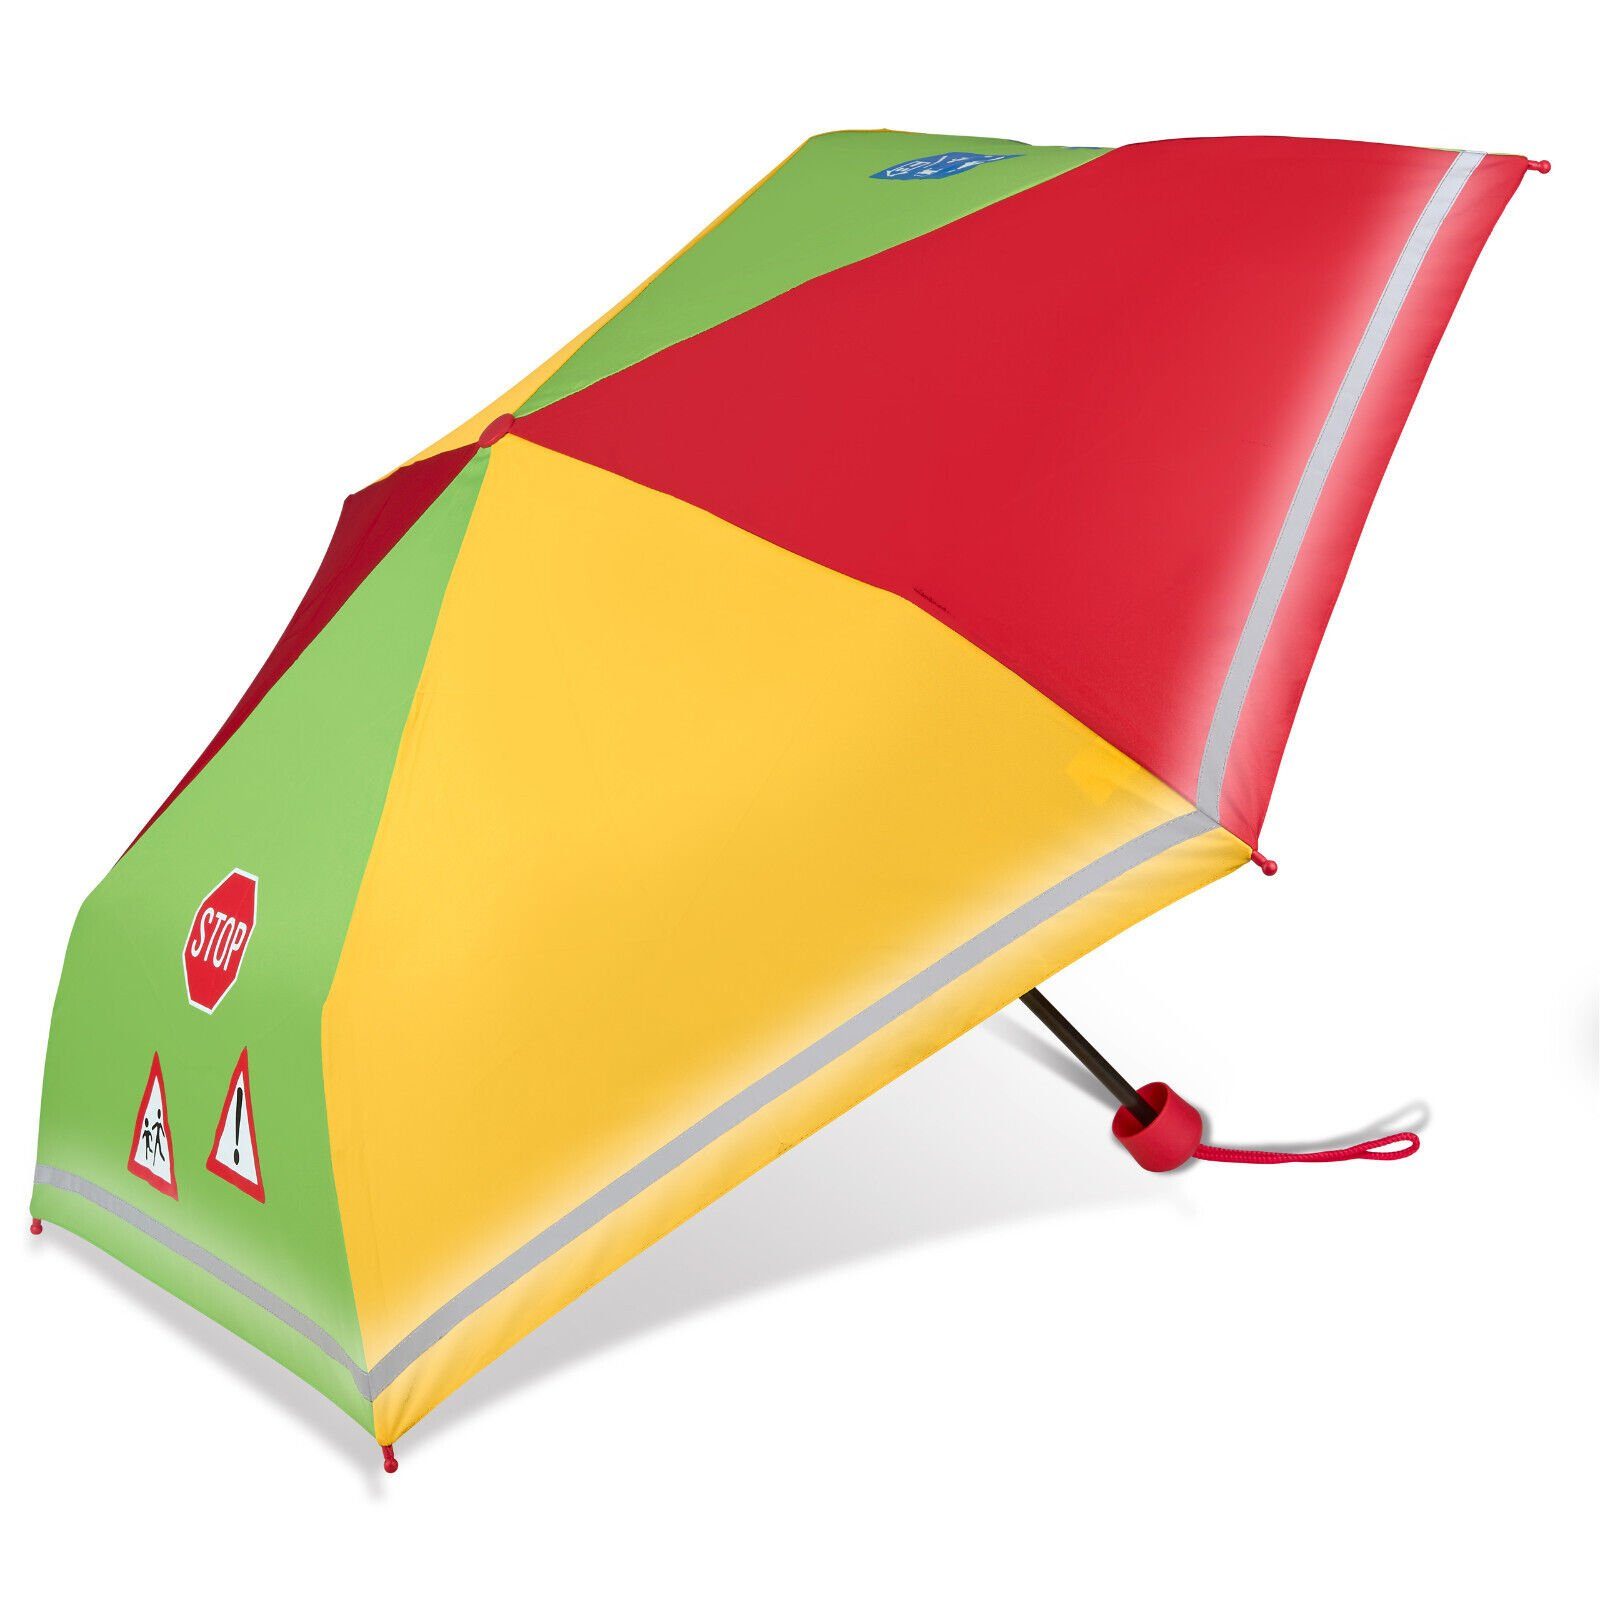 Dr. Neuser Taschenregenschirm, speziell für Kinder, reflektierend, leicht,  kompakt, stabil, Kinder Regenschirm mit Reflektionsstreifen extra leicht  stabil reflektierend